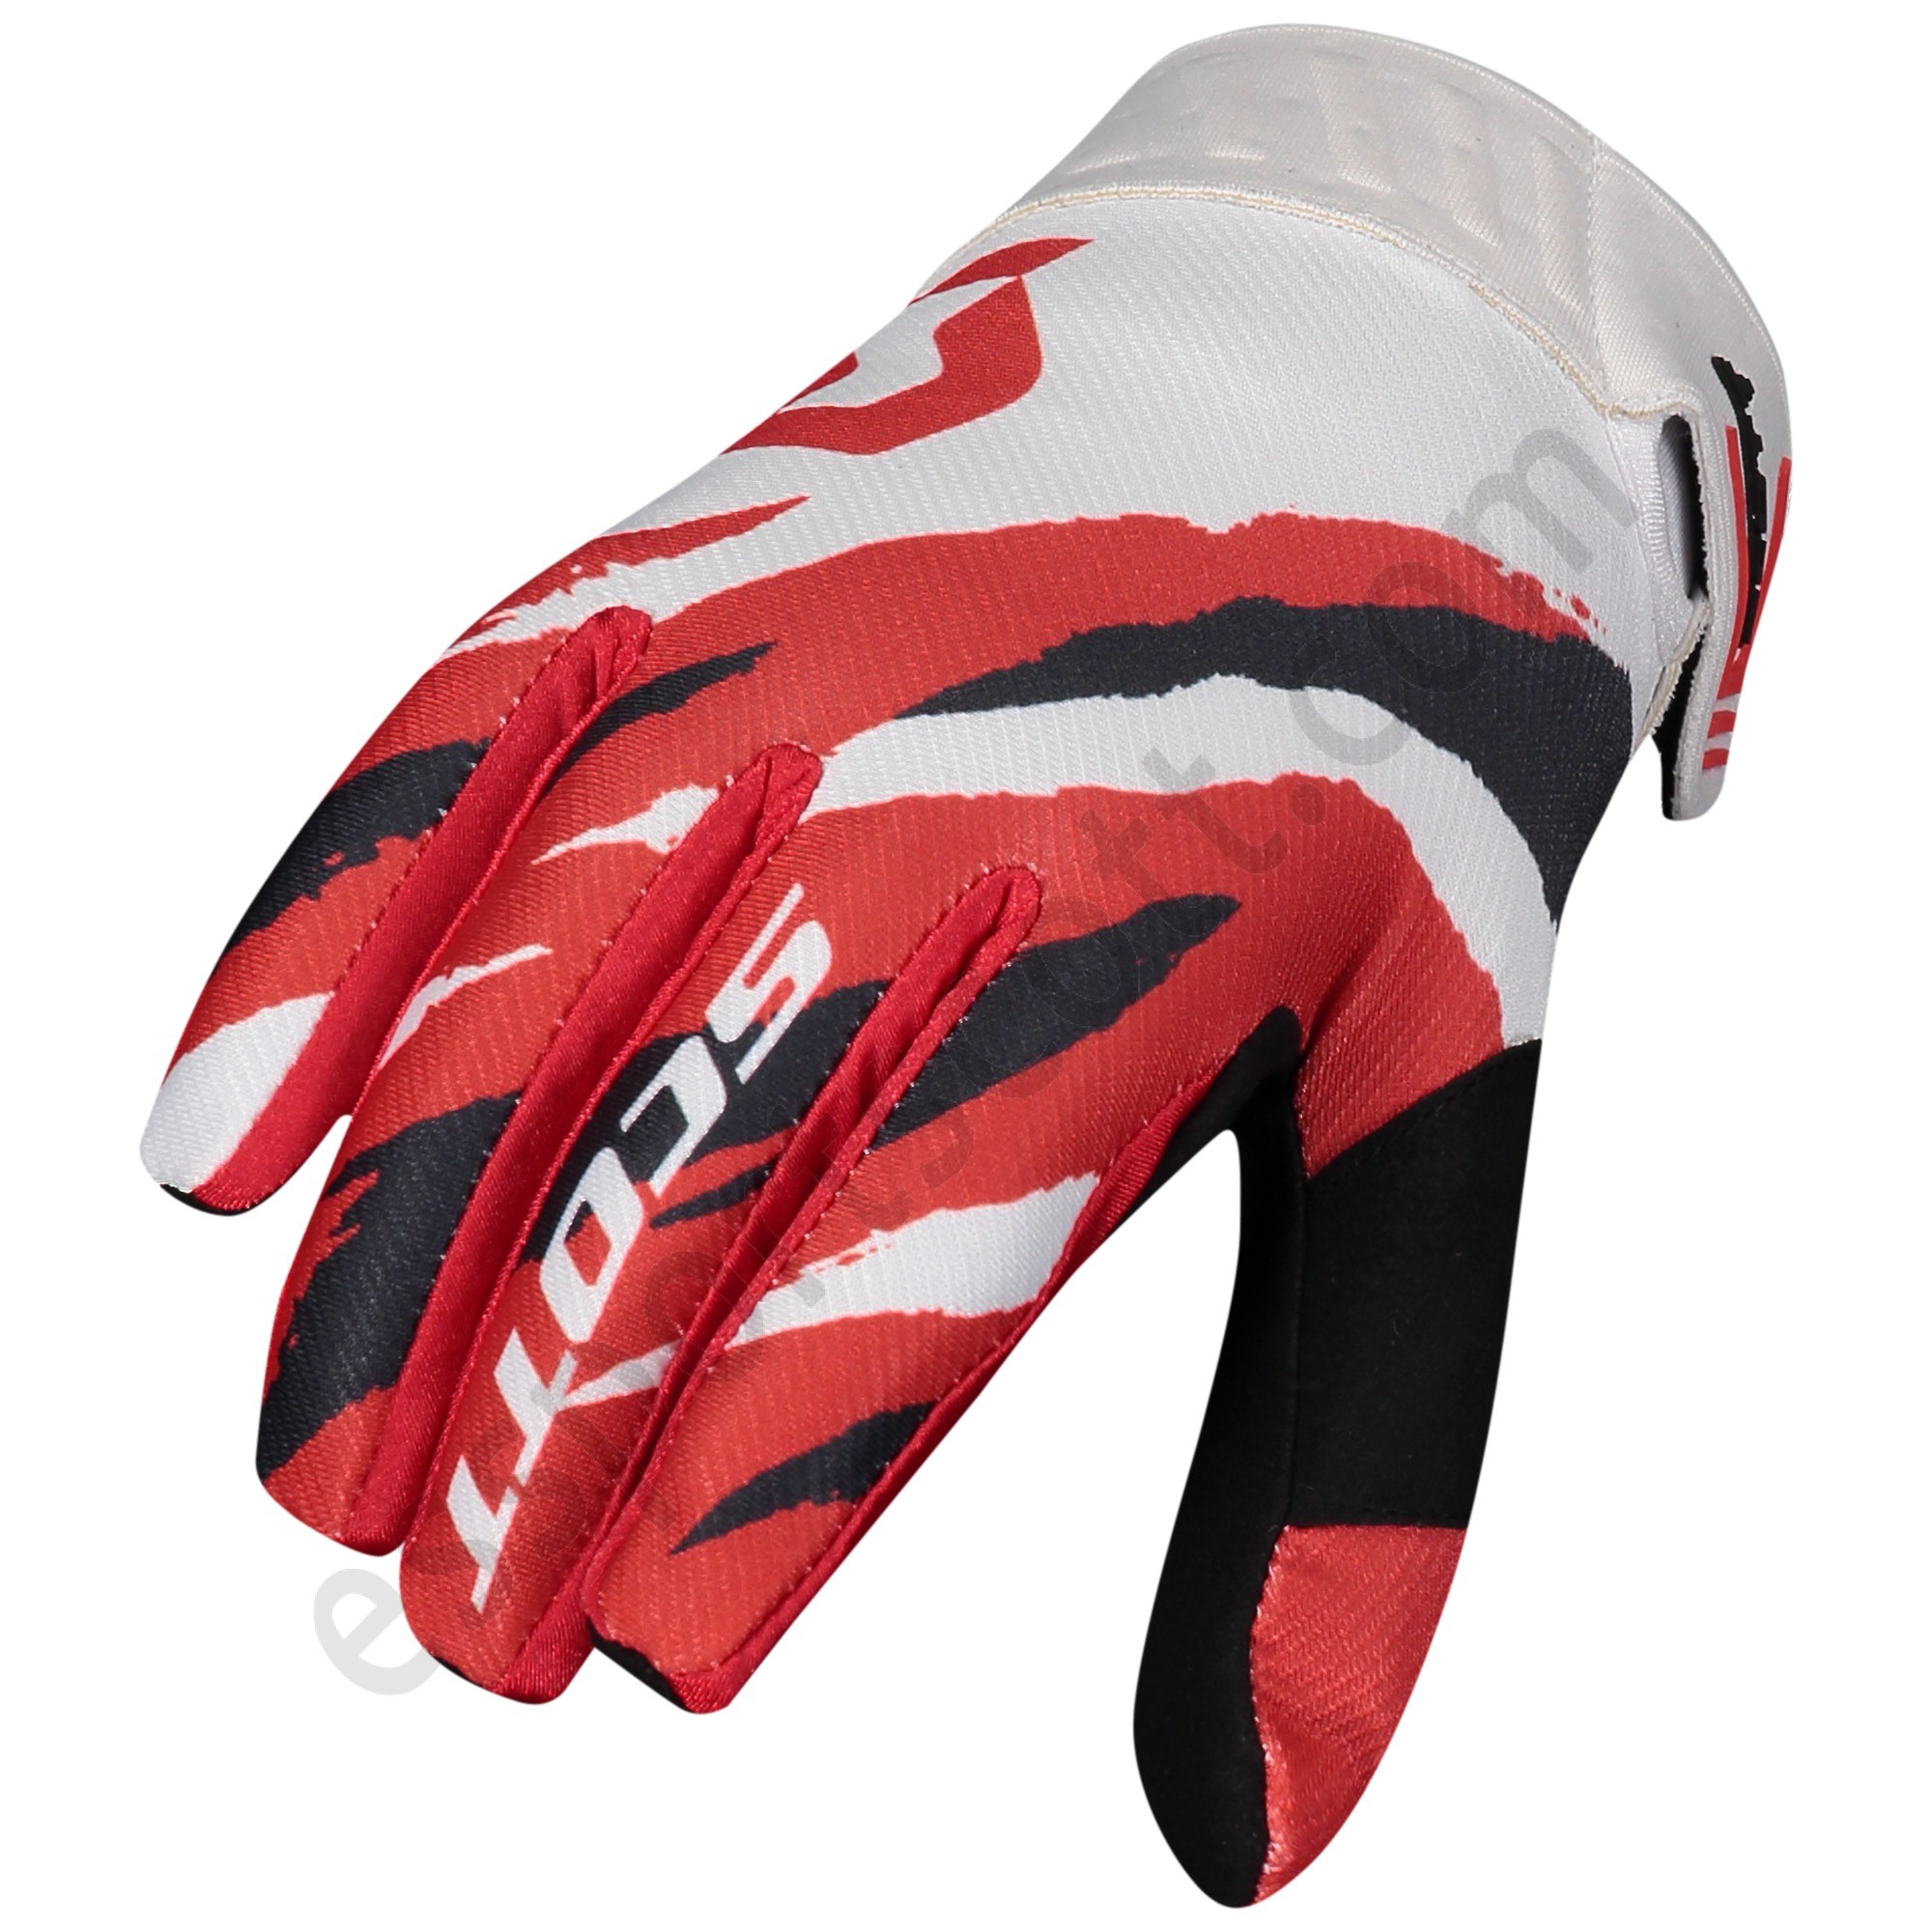 Scott Tienda ◇ 450 Prospect Glove - Scott Tienda ◇ 450 Prospect Glove